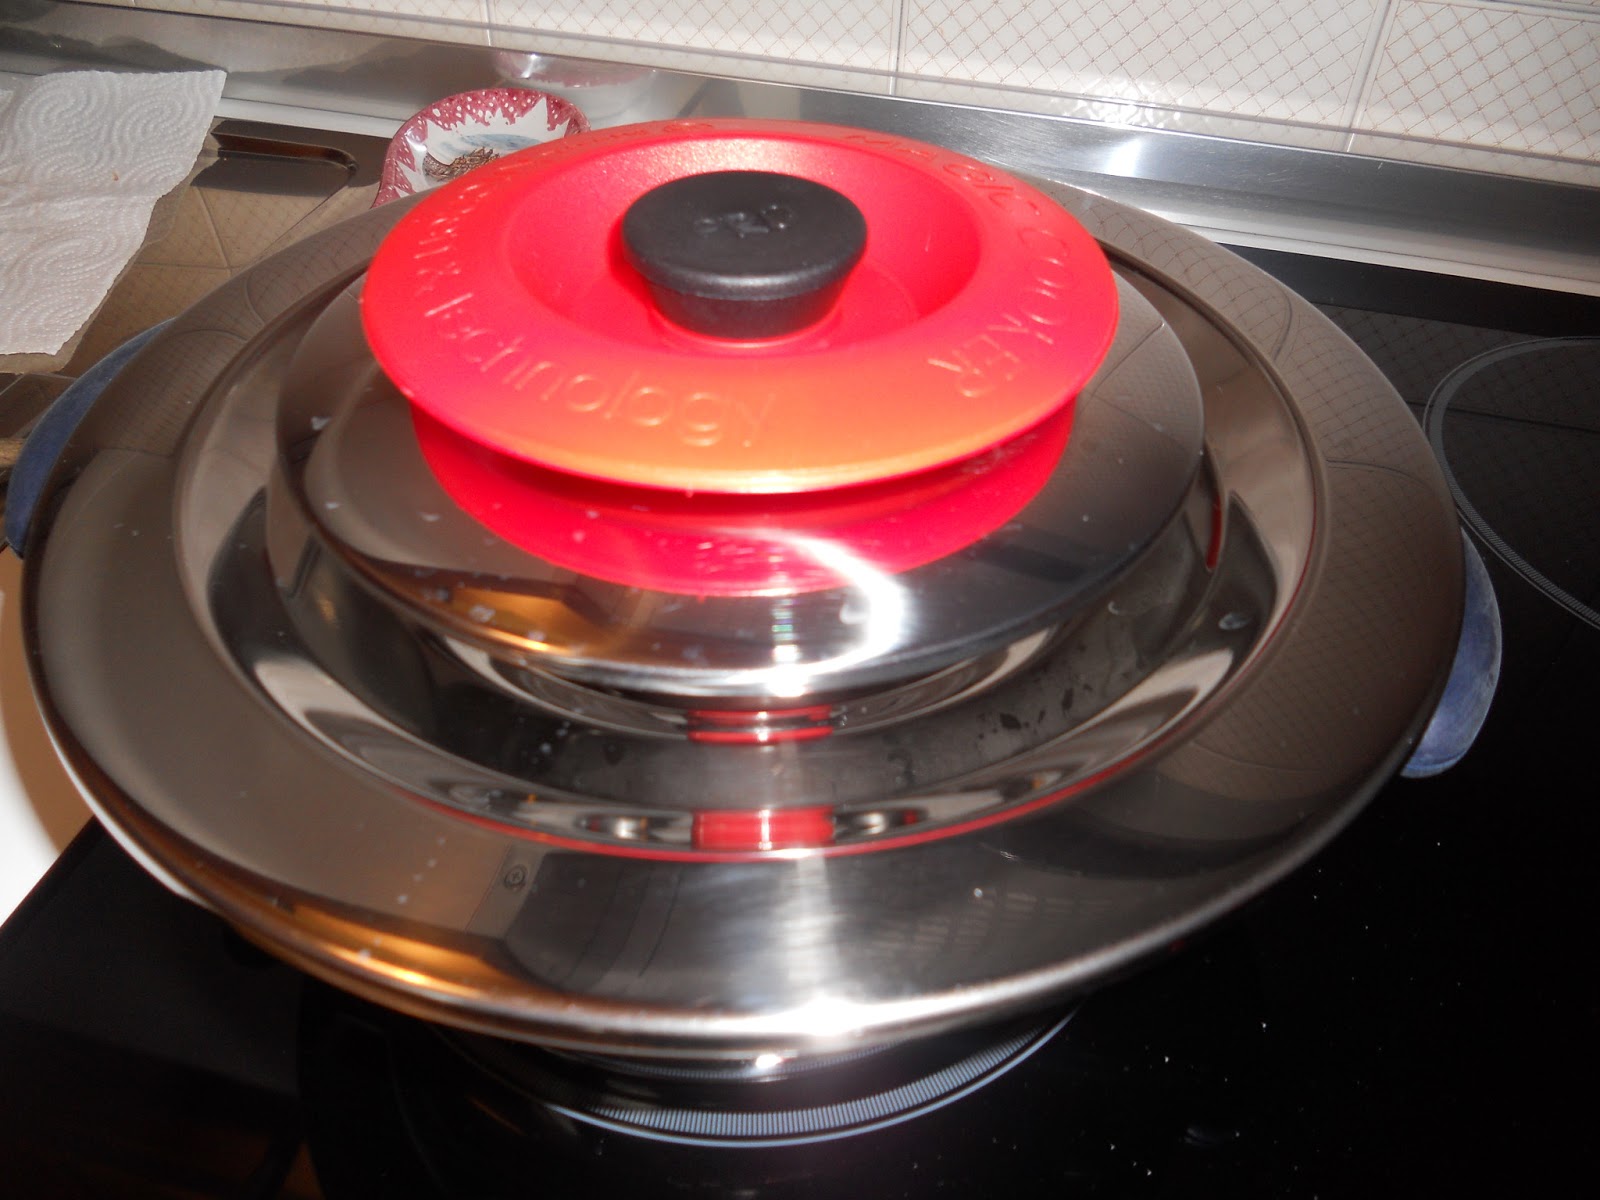 che cos'è il magic cooker - come funziona il magic cooker - a cosa